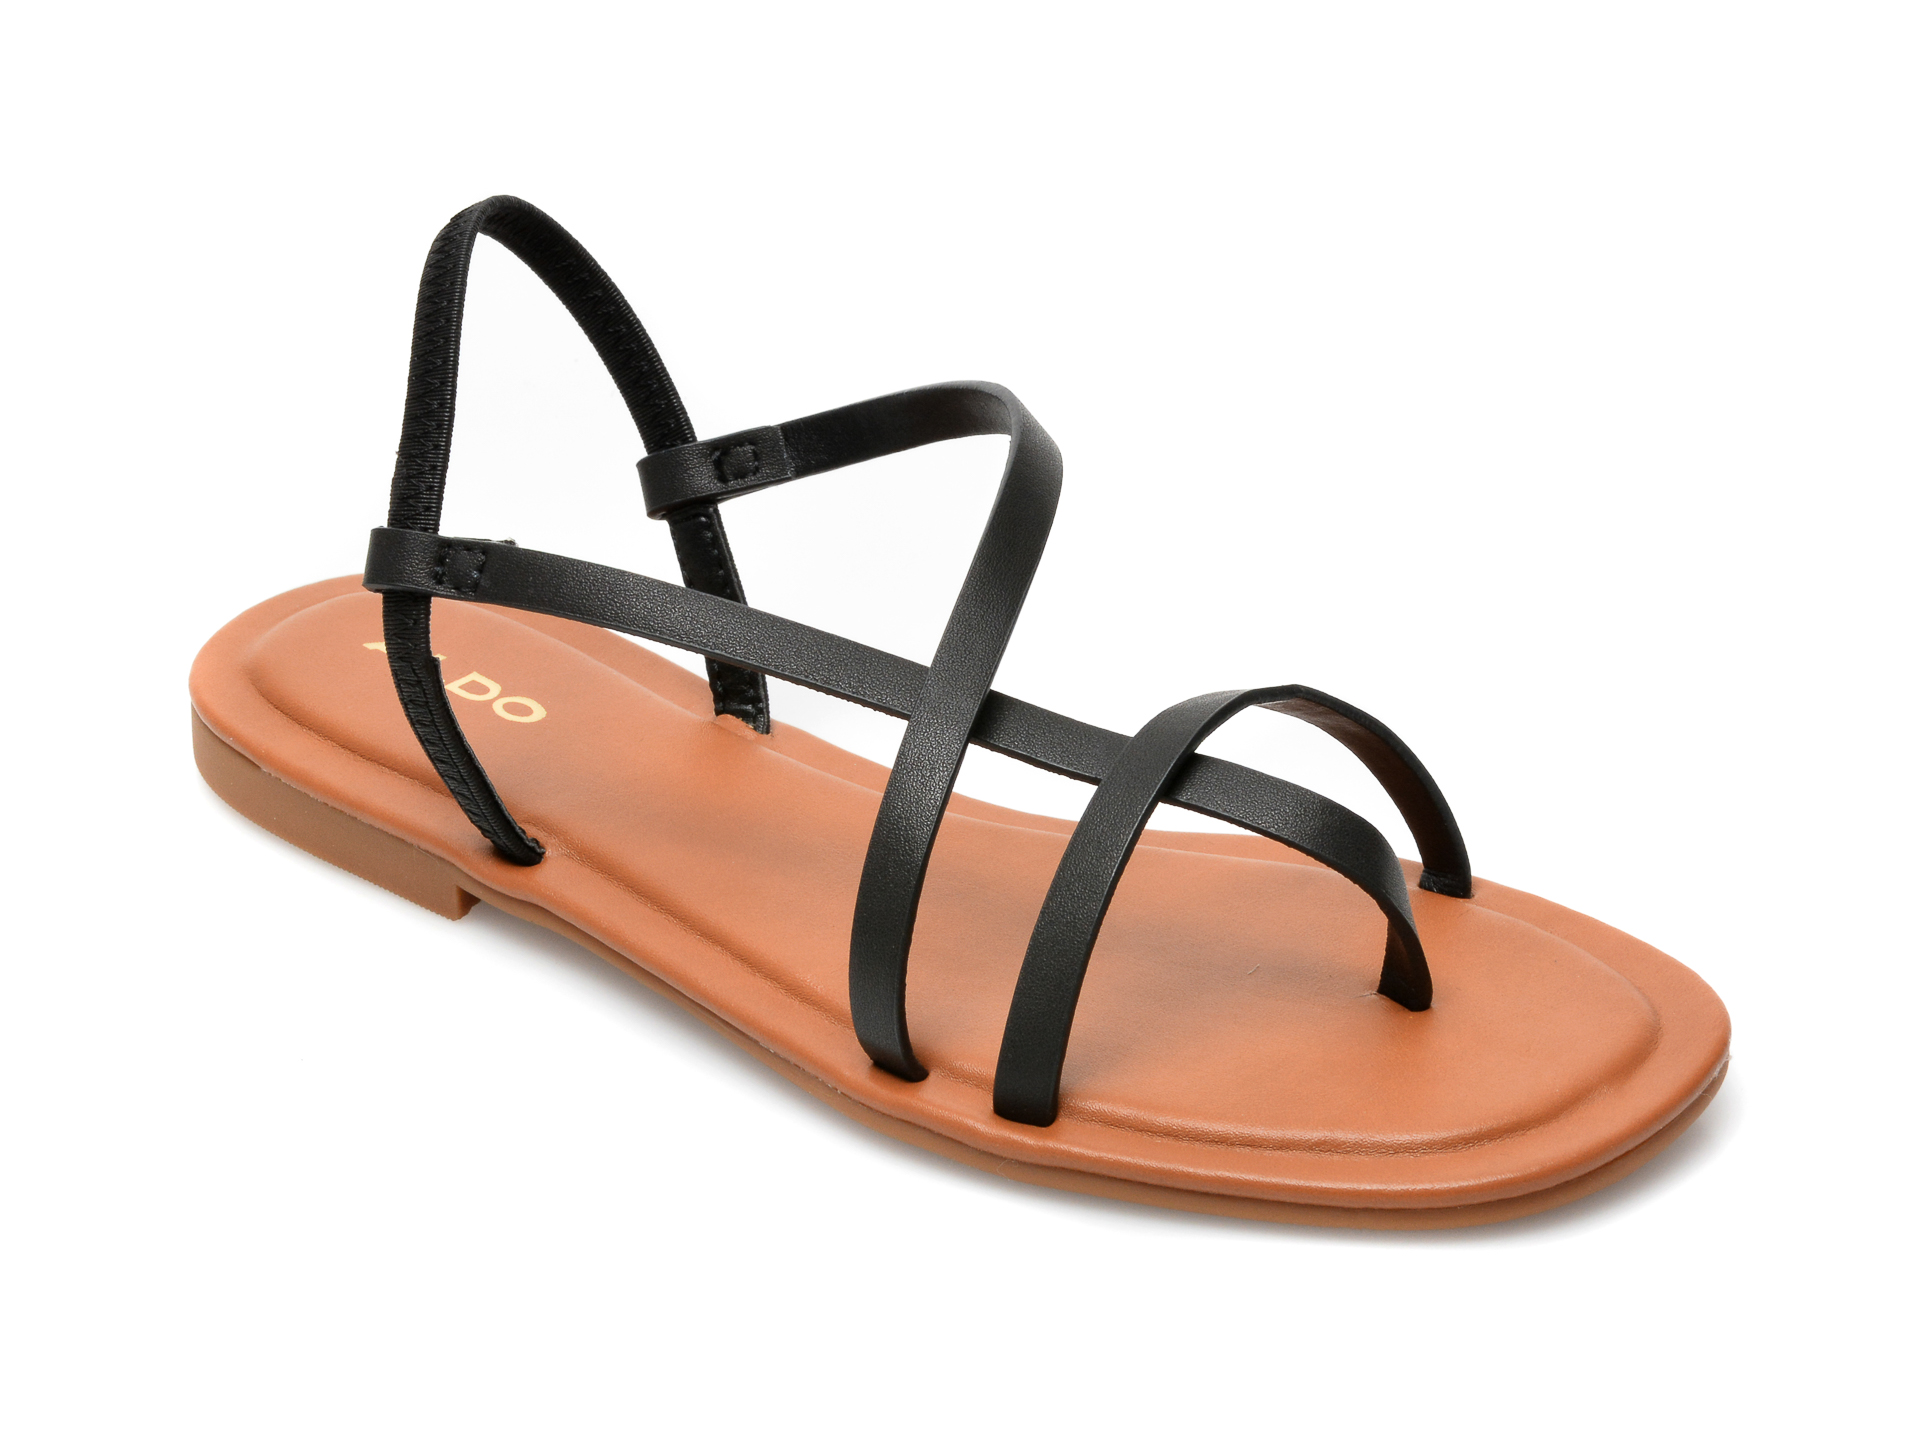 Sandale ALDO negre, Broasa001, din piele ecologica Aldo